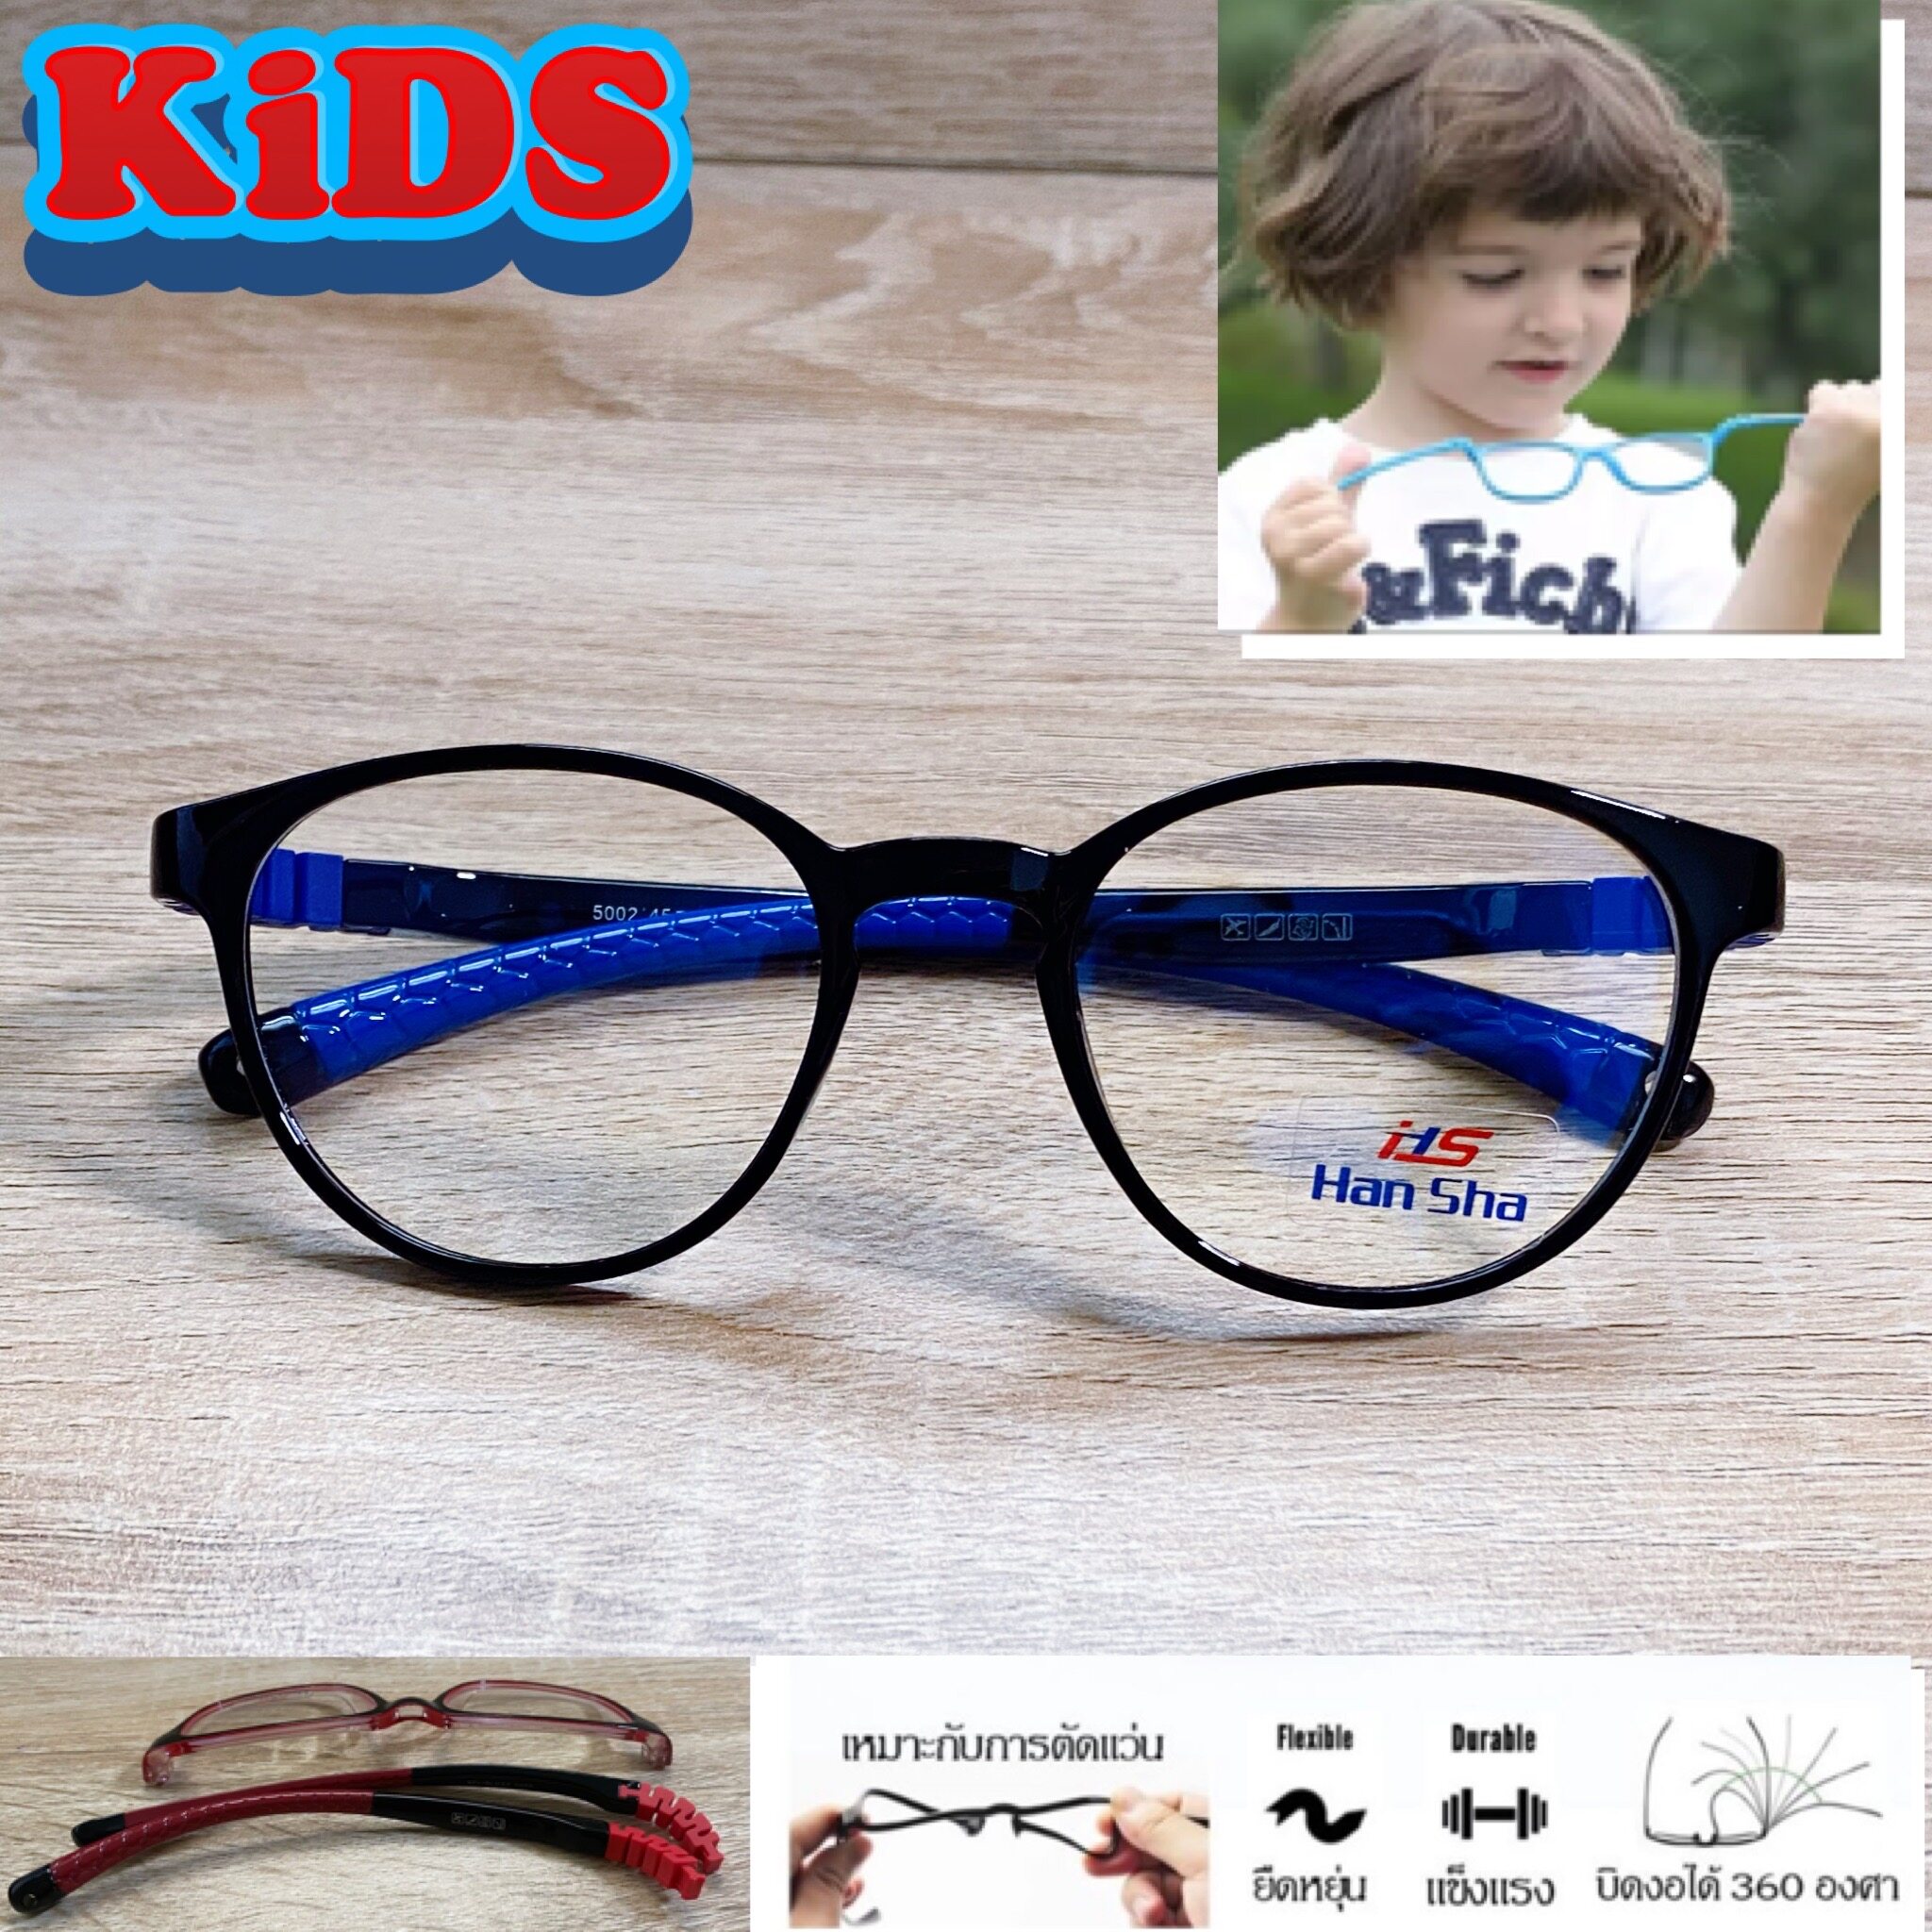 แว่นตาเด็ก กรอบแว่นตาเด็ก สำหรับตัดเลนส์ แว่นตา Han Sha รุ่น 5002 สีดำ ขาไม่ใช้น็อต ยืดหยุ่น ถอดขาเปลี่ยนได้ วัสดุ TR 90 เบา ไม่แตกหัก